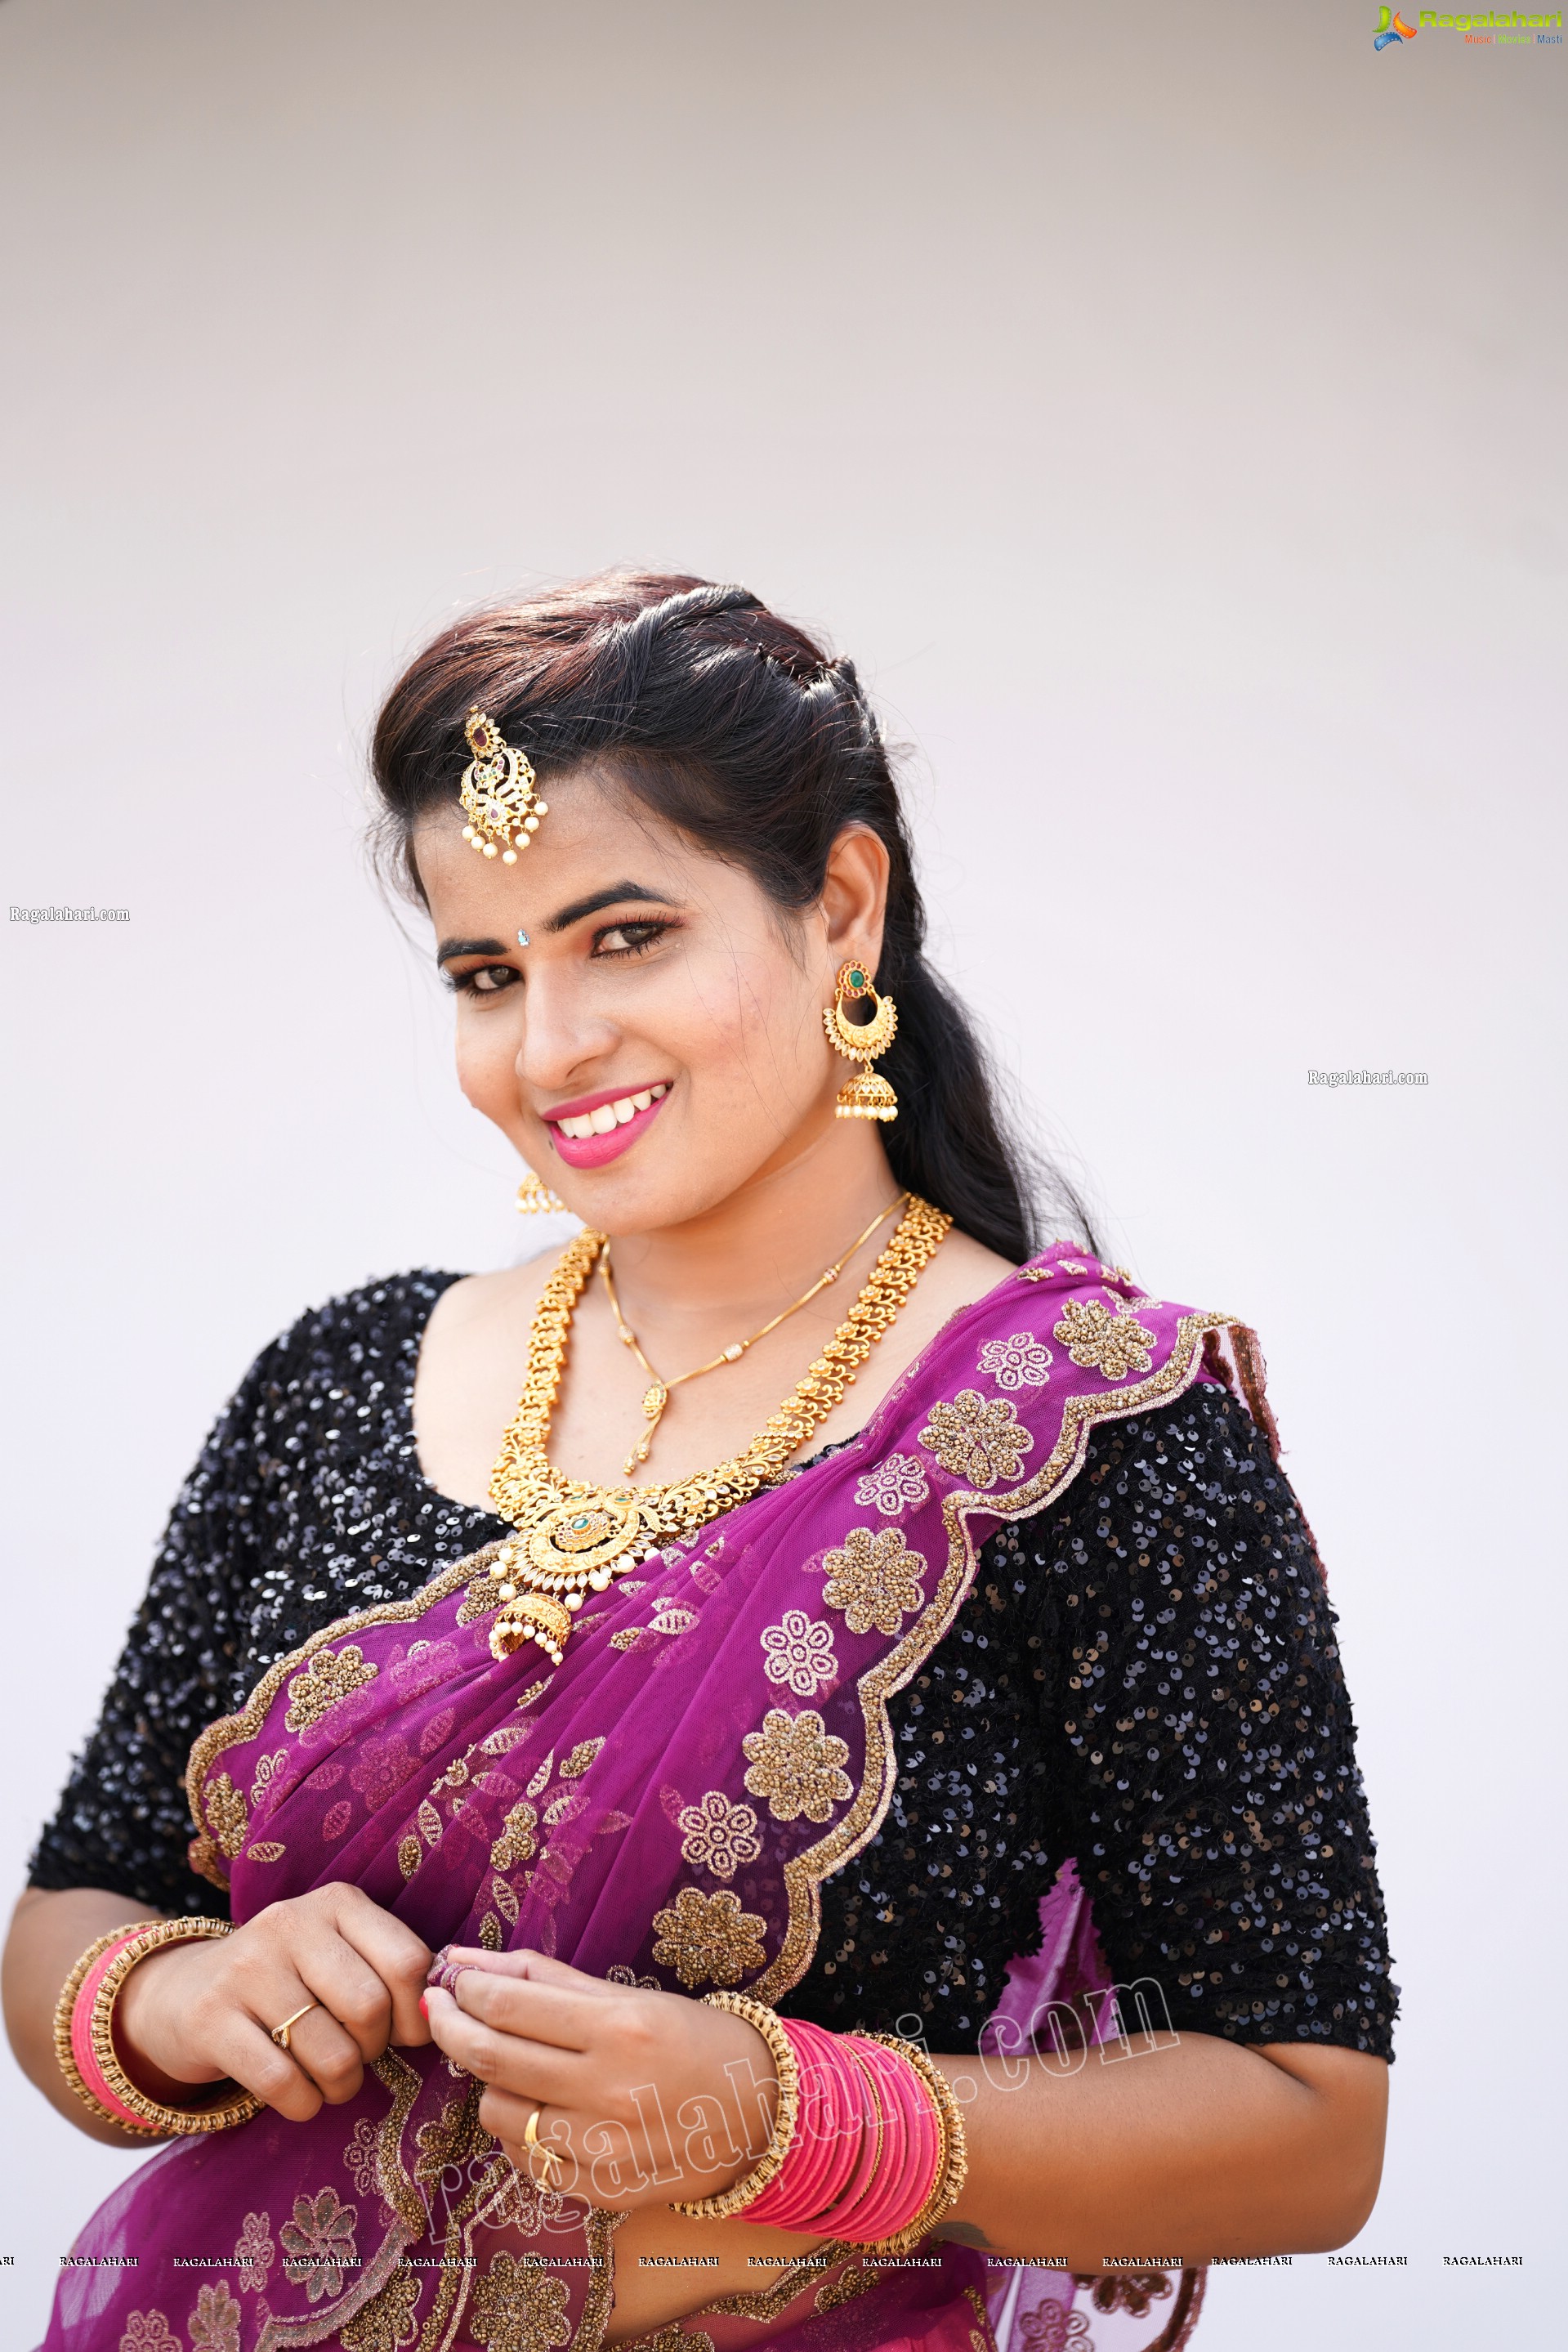 Anusha Venugopal in Pink Designer Lehenga Choli, Exclusive Photoshoot